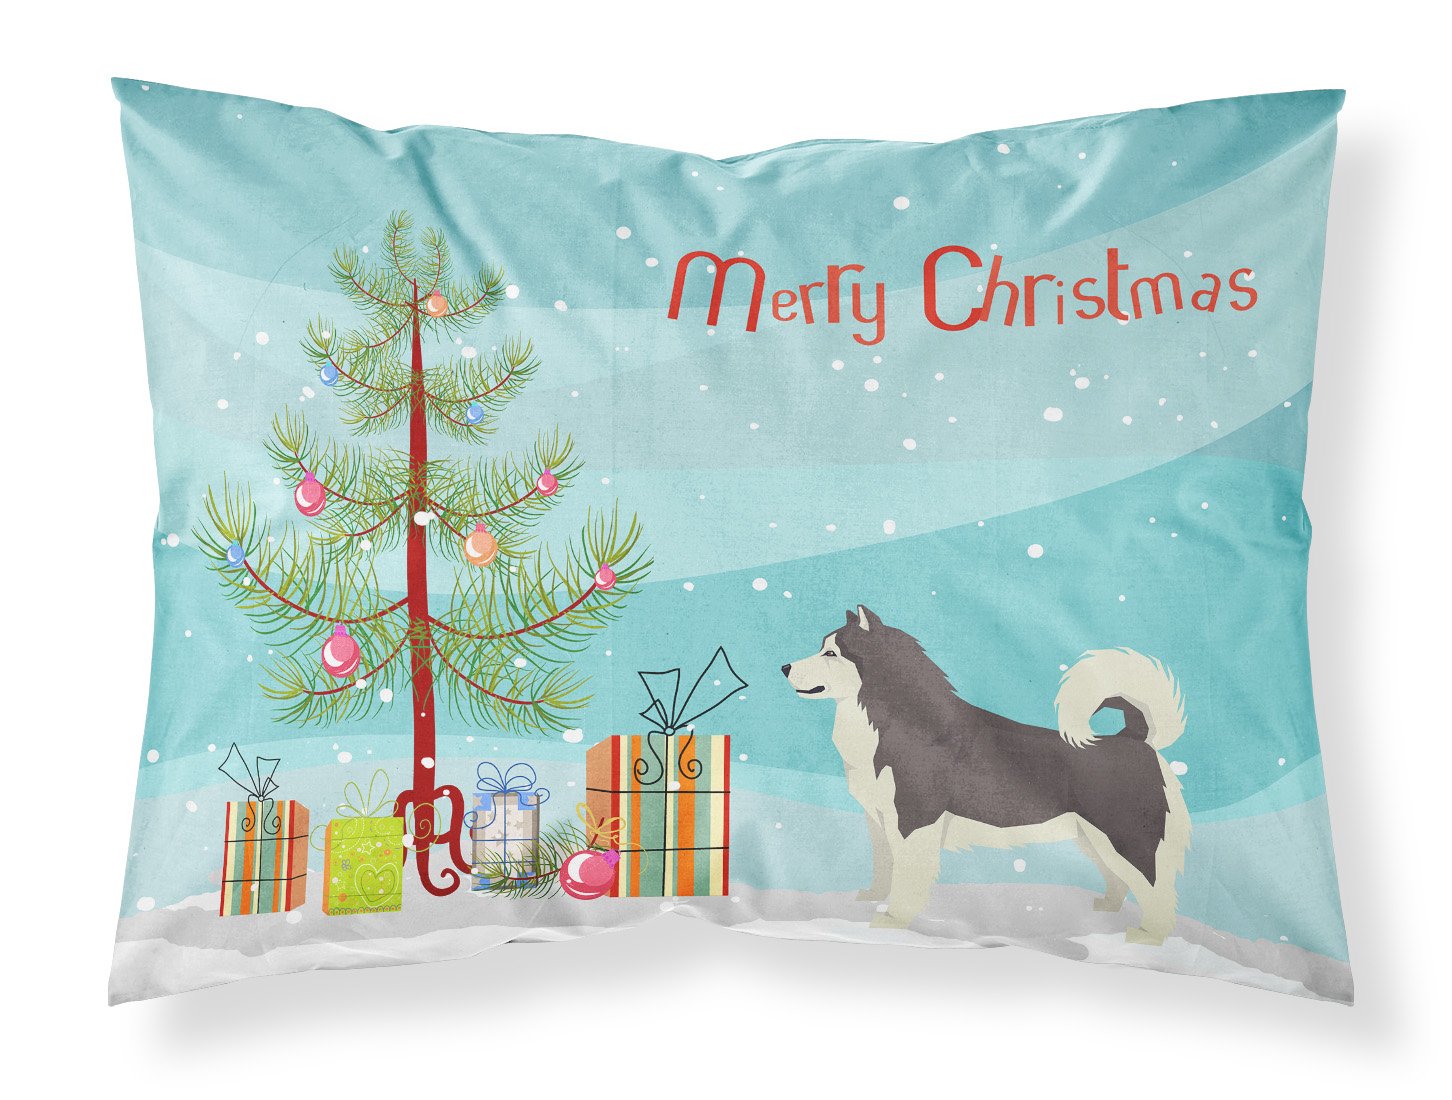 Alaskan Malamute Christmas Tree Fabric Standard Pillowcase CK3513PILLOWCASE by Caroline's Treasures